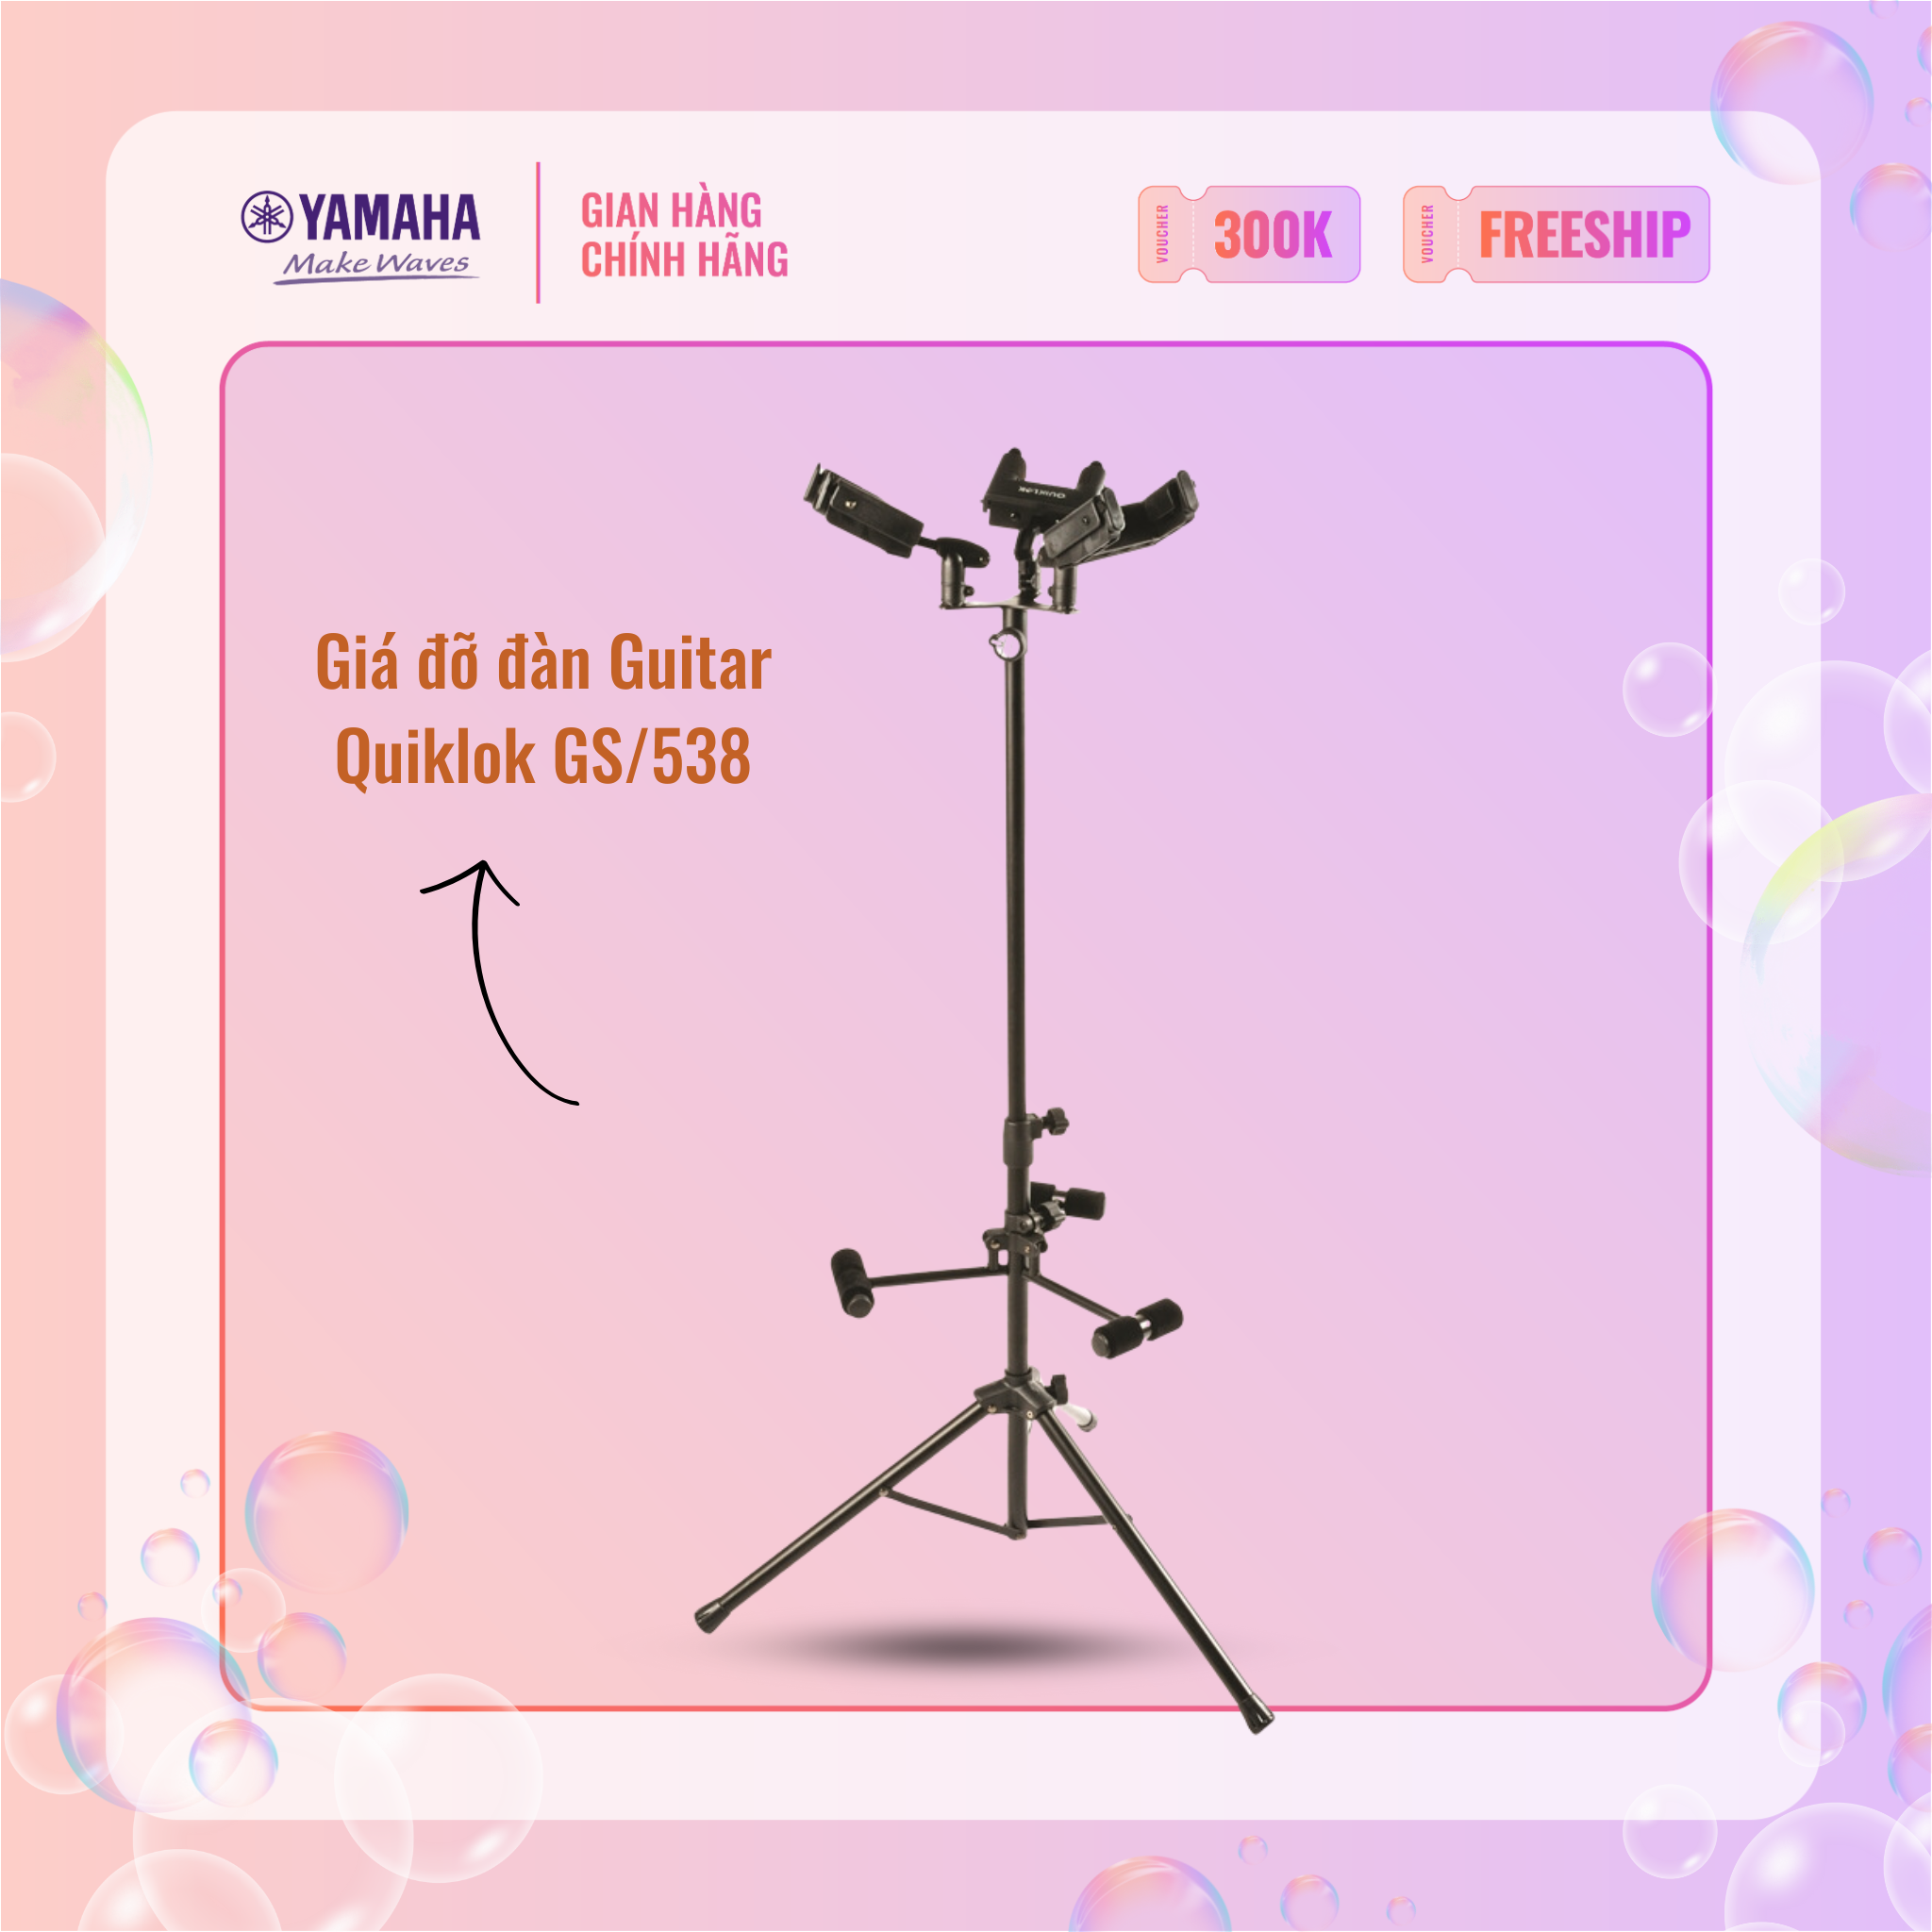 Gía đỡ đàn Guitar đa năng QUIKLOK GS/538